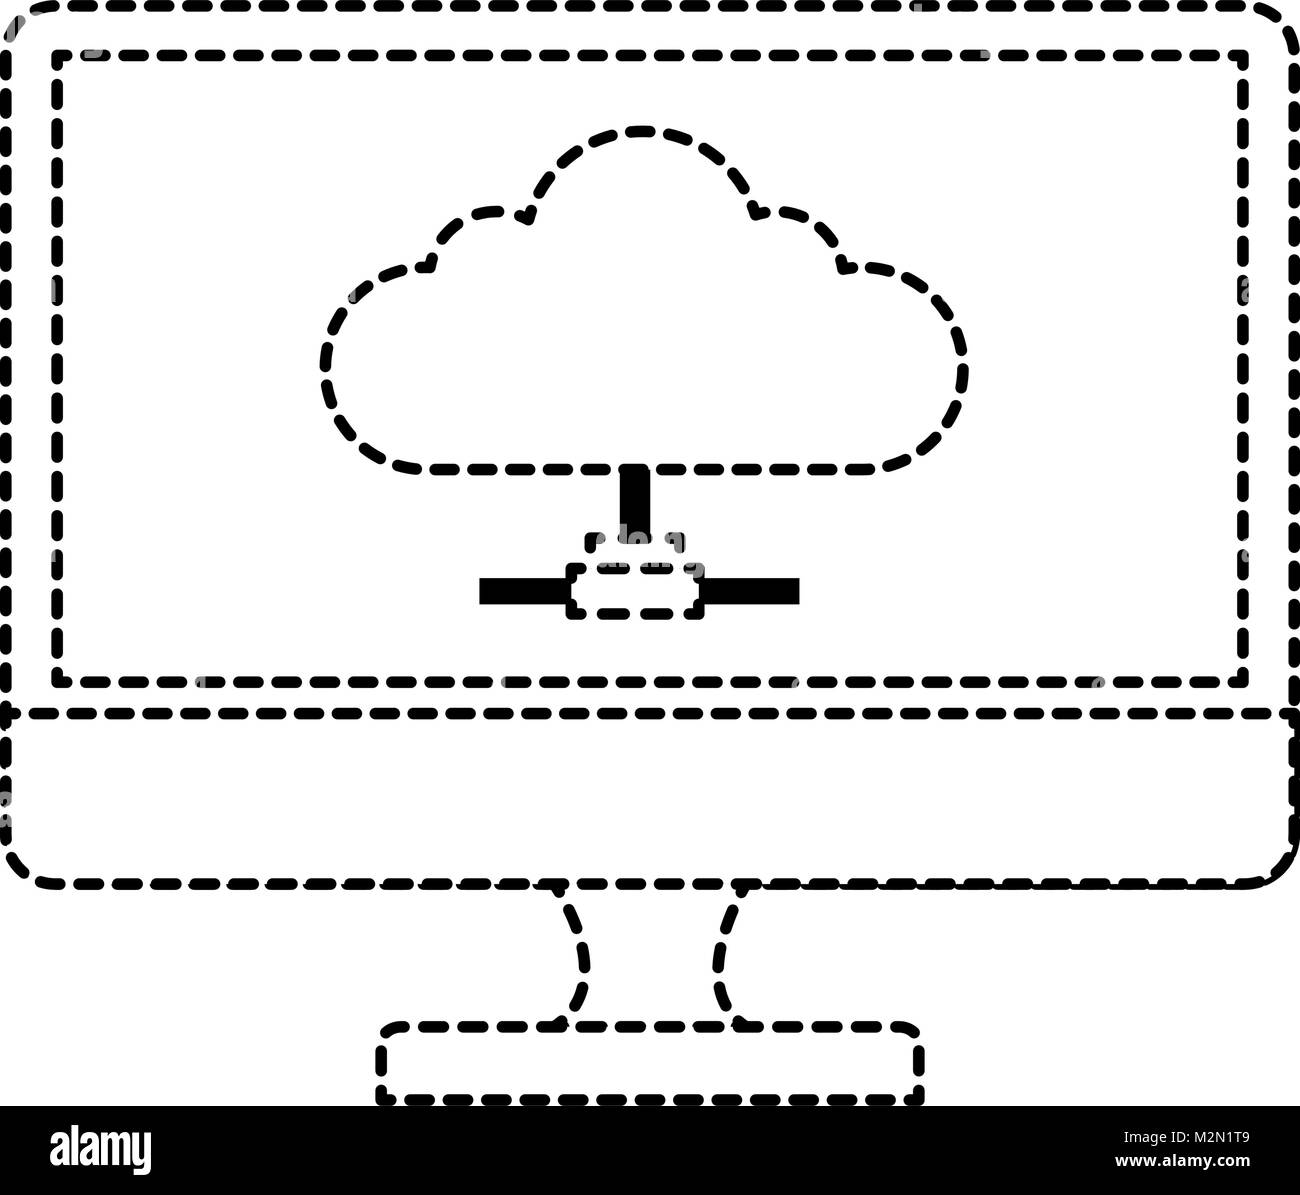 Ordinateur Moniteur grâce au cloud computing Illustration de Vecteur